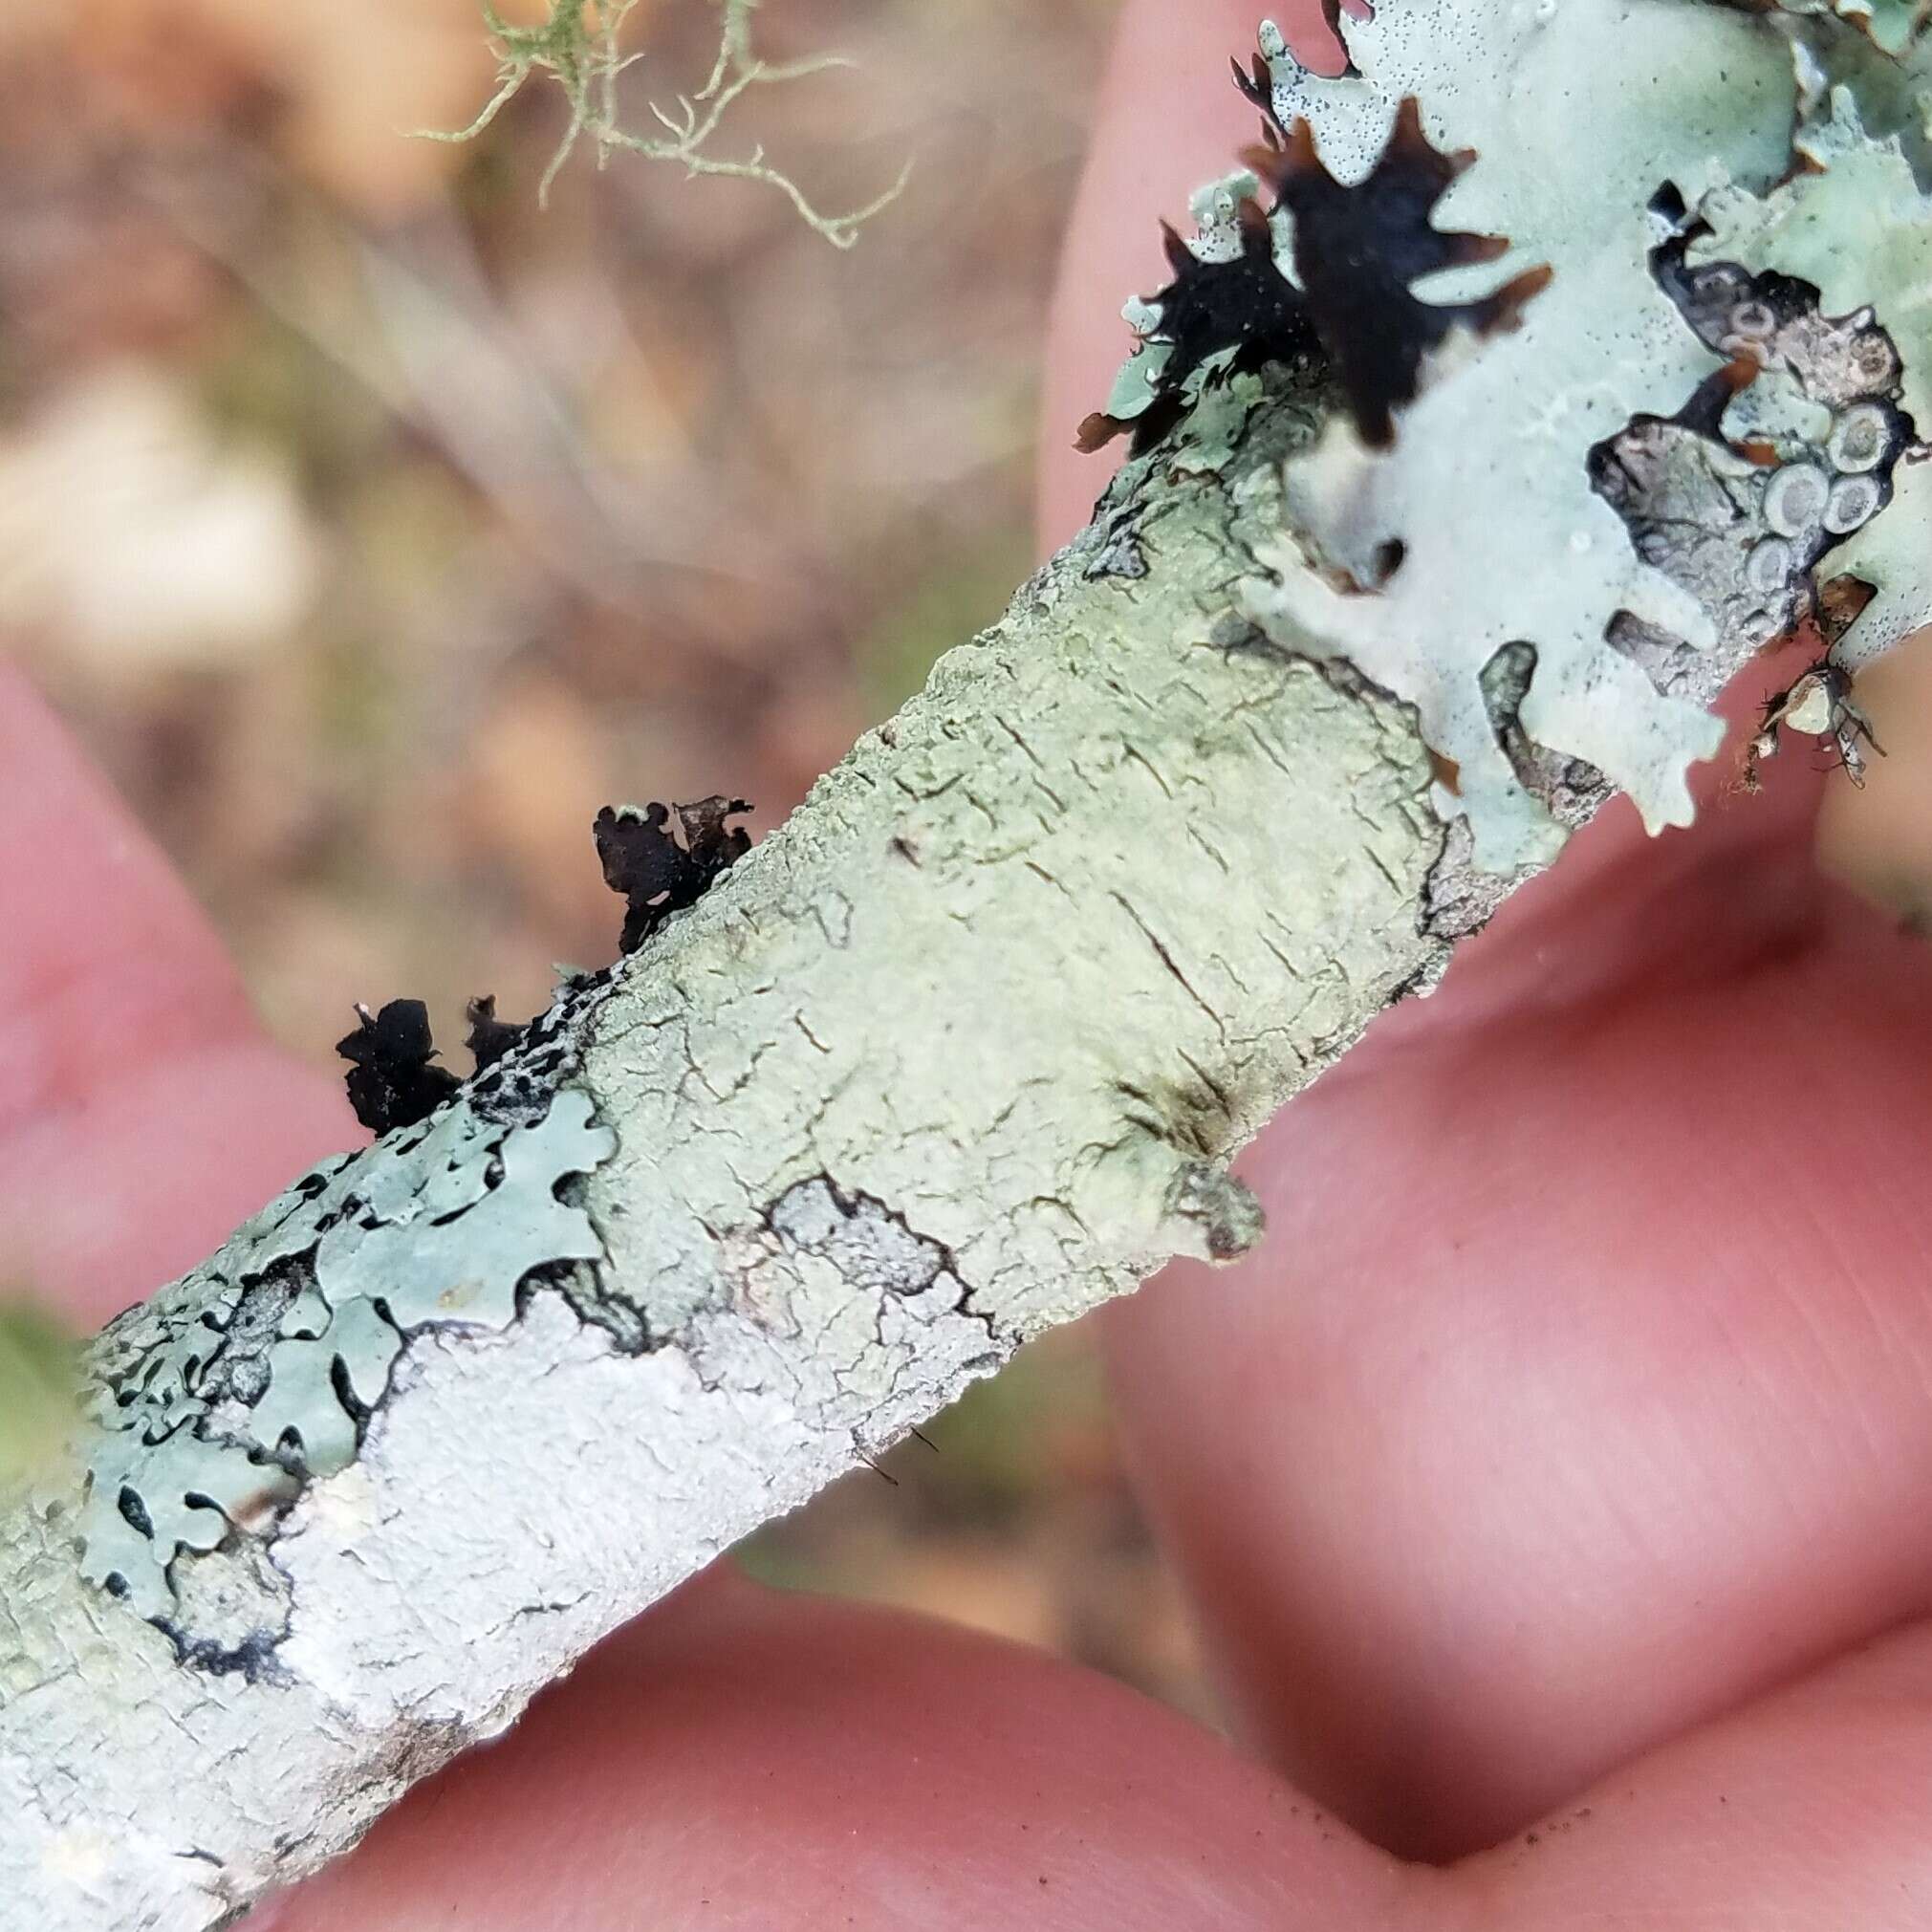 Image of Texan pore lichen